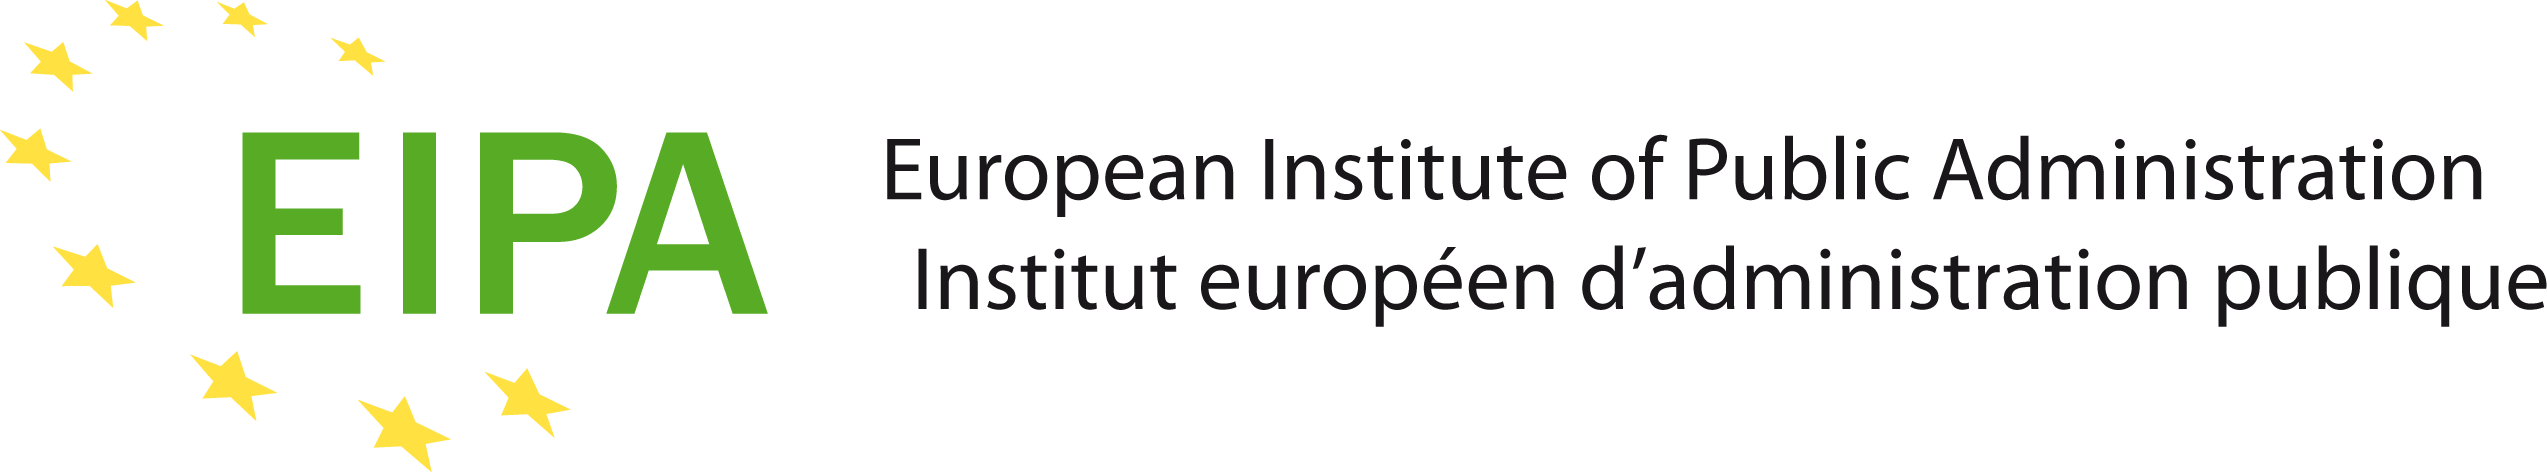 European Institute for Public Administration logo